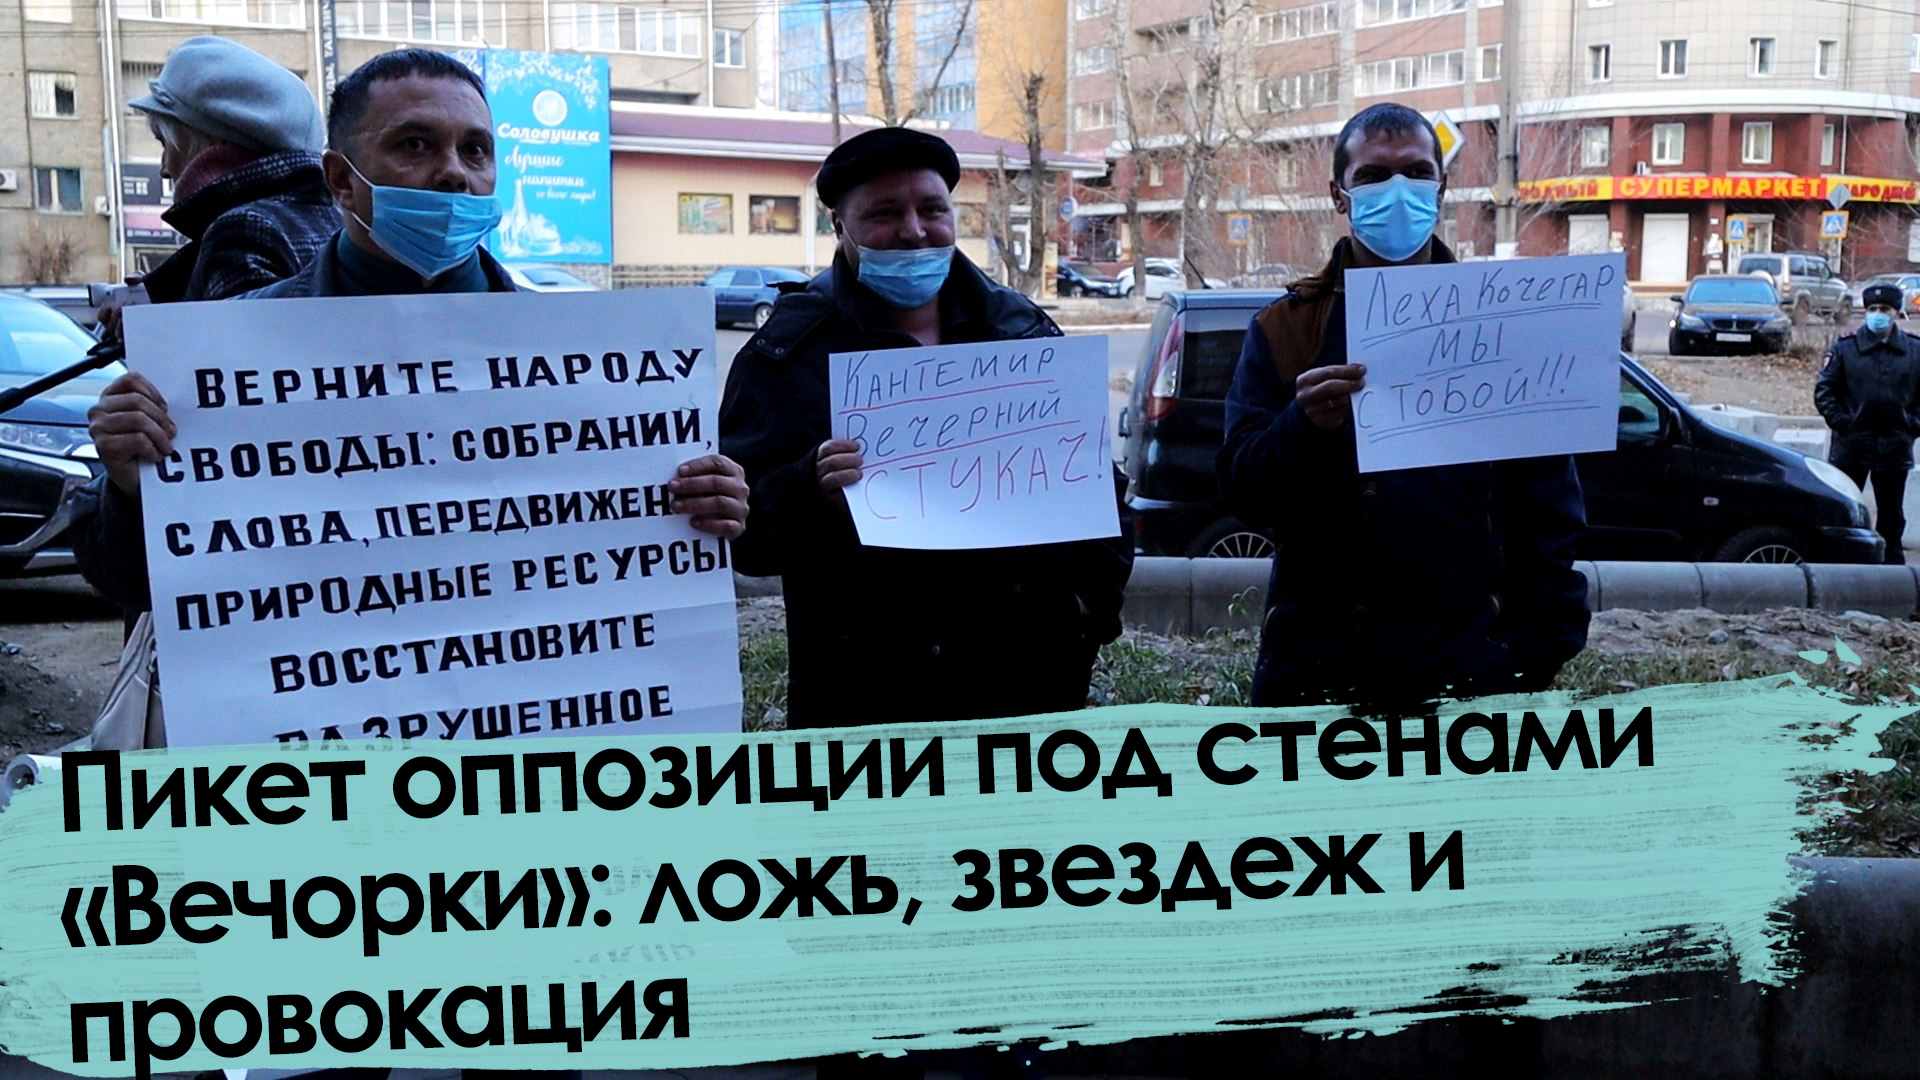 «Вечорка ТВ»: Пикет оппозиции под стенами «Вечорки»: ложь, звездеж и провокация